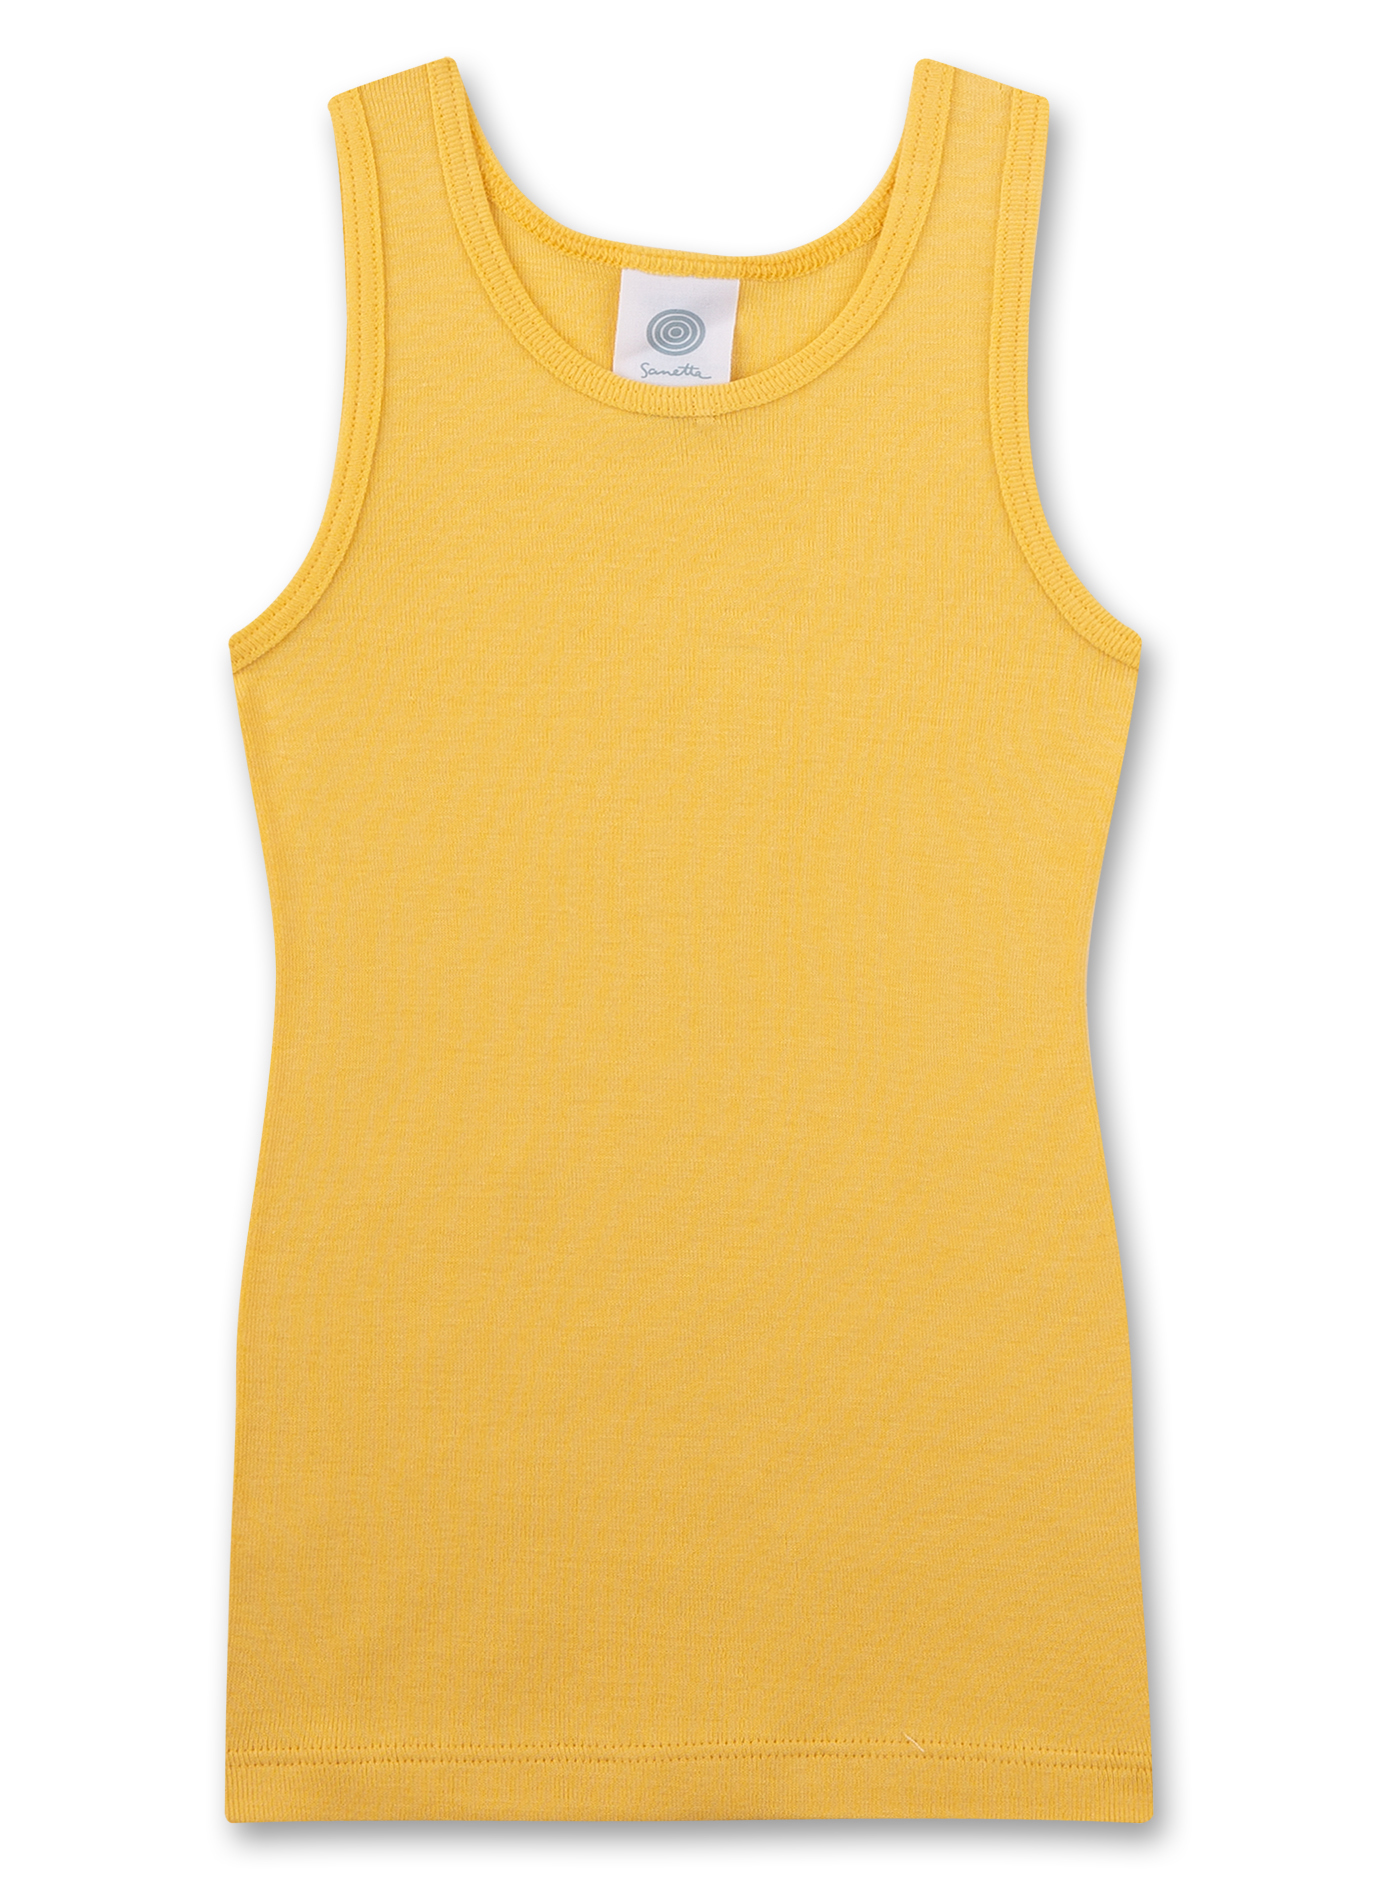 Mädchen-Unterhemd (Doppelpack) Beige und Gelb